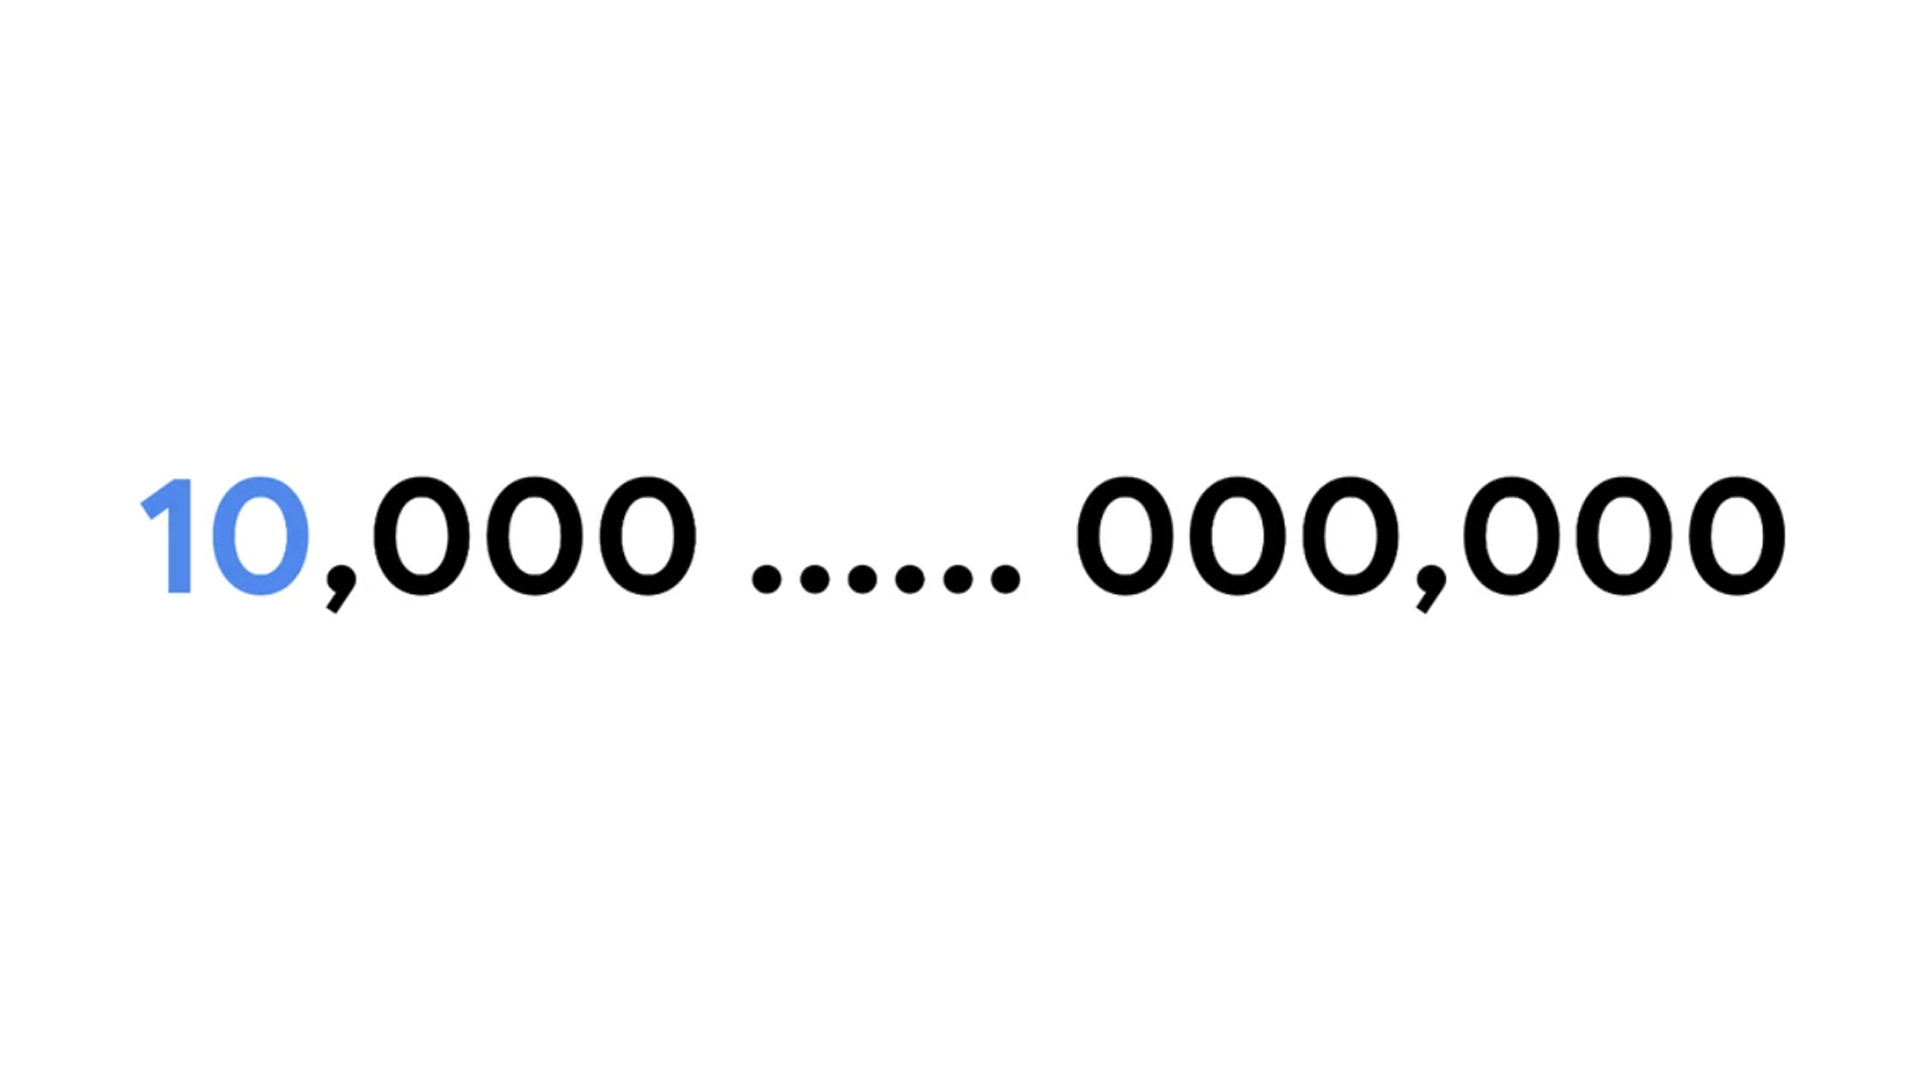 یک عدد گوگول کوتاه شده تا بتواند روی یک صفحه قرار گیرد